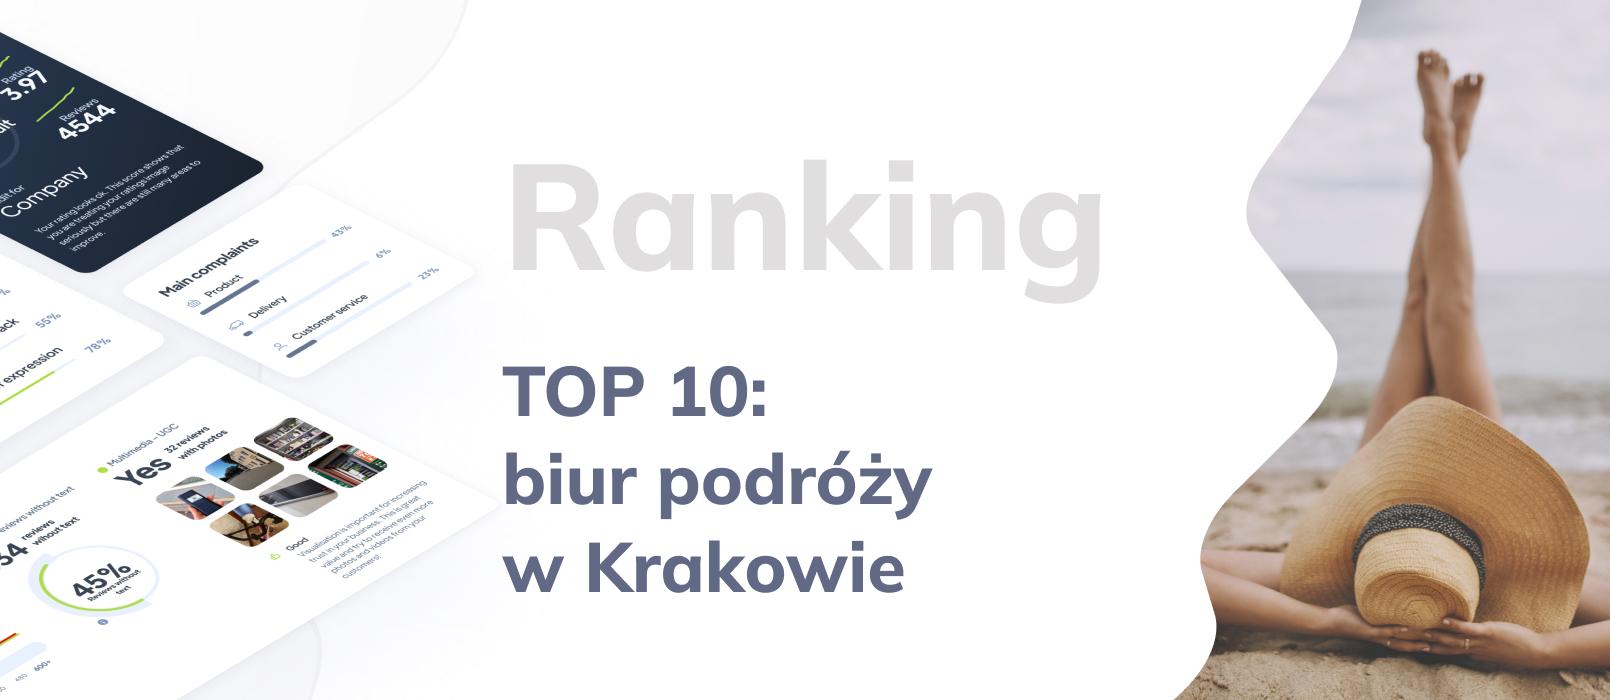 TOP 10 - Najlepsze biura podróży w Krakowie